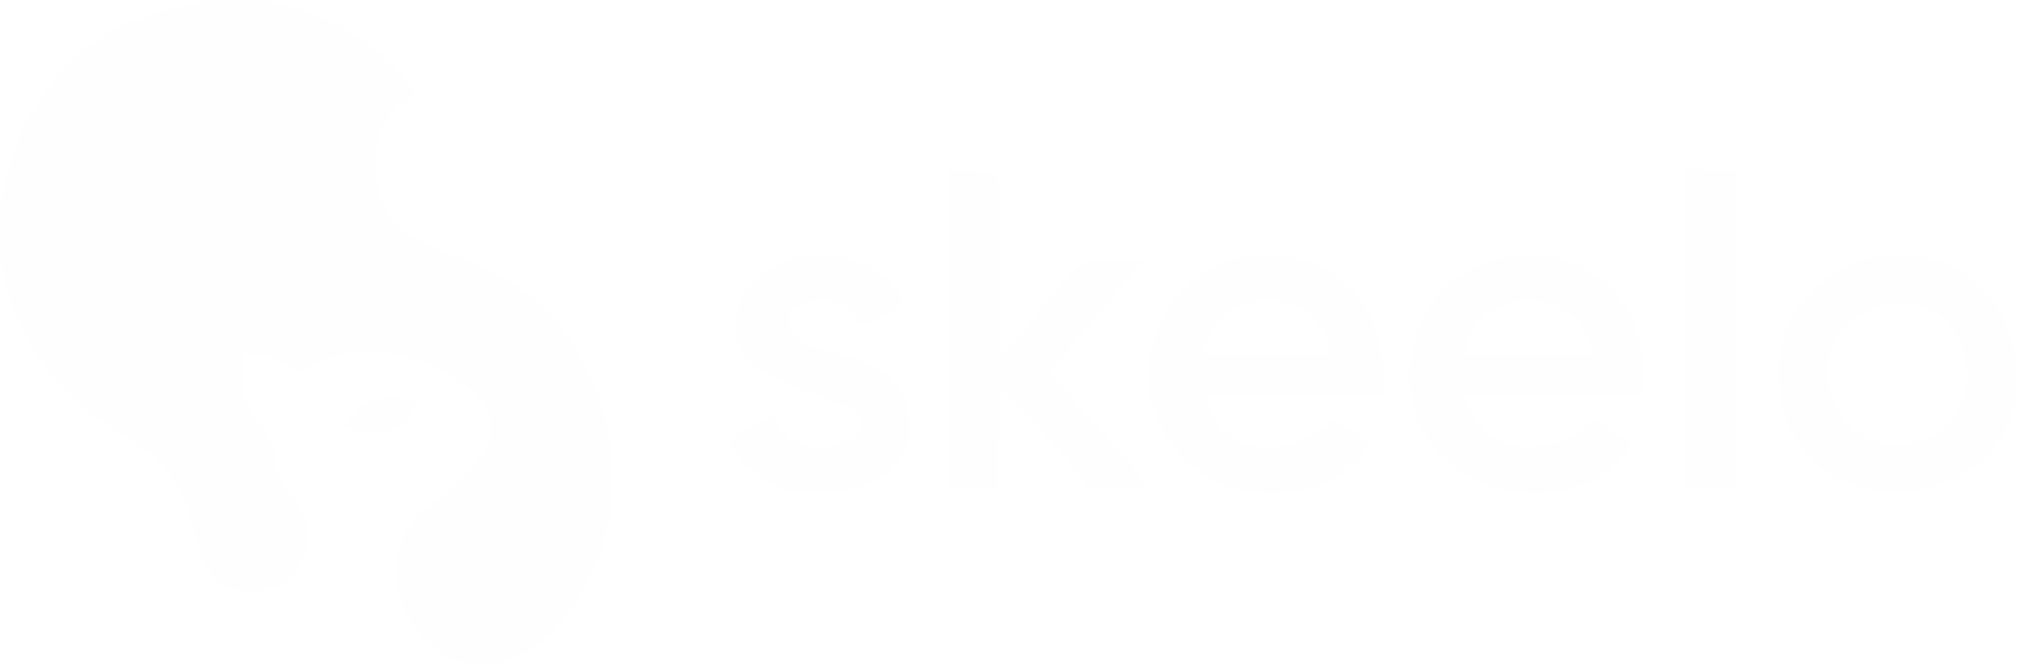 Skeelo